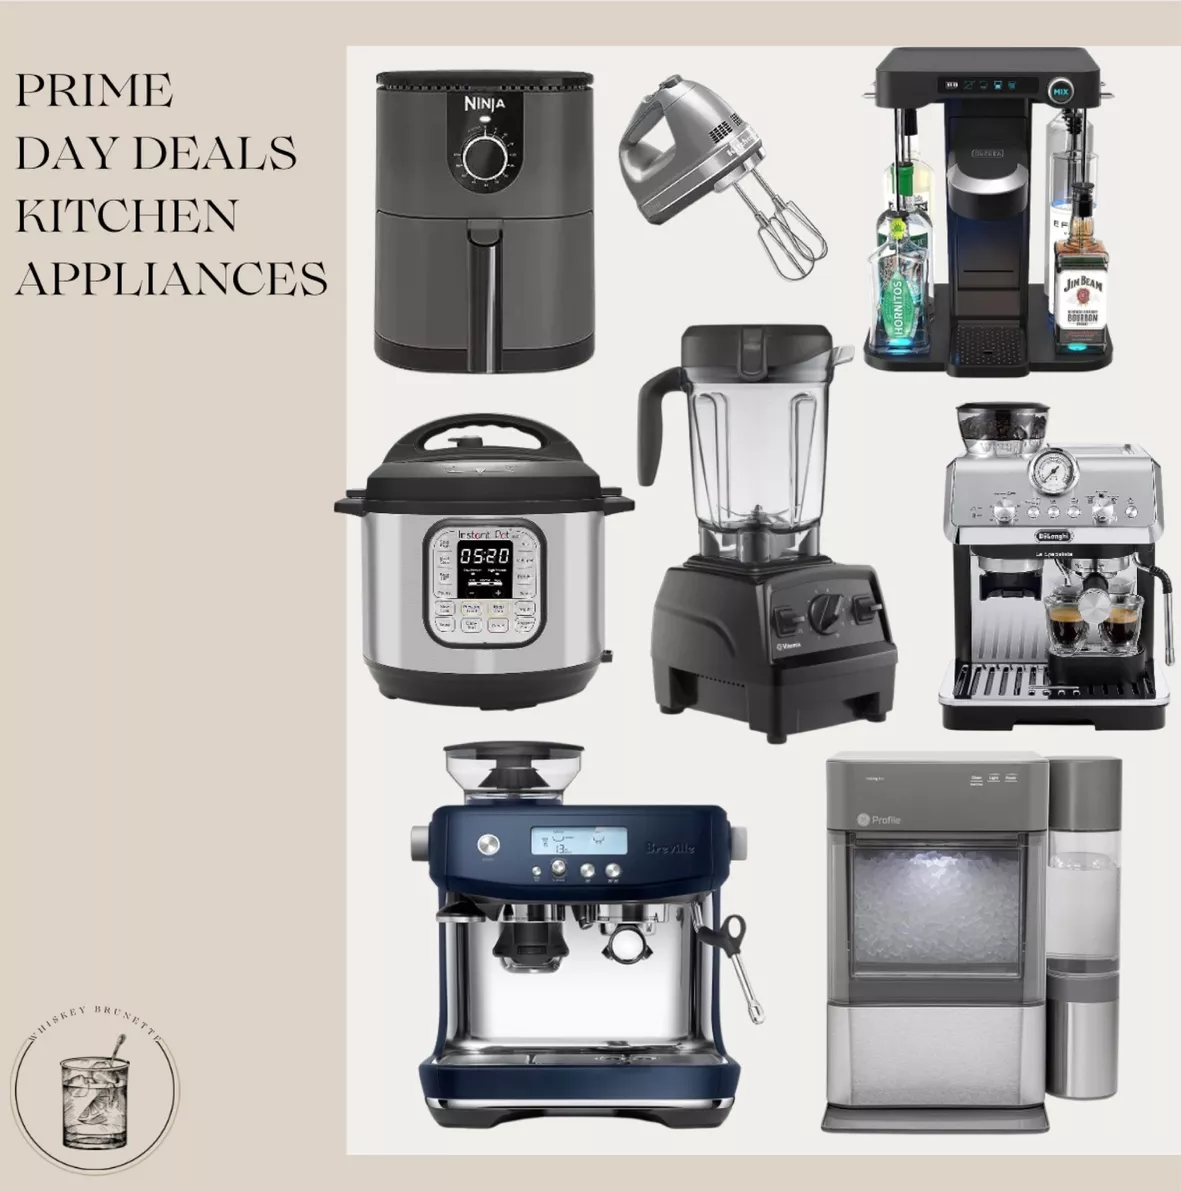 Ninja Small Kitchen Appliances